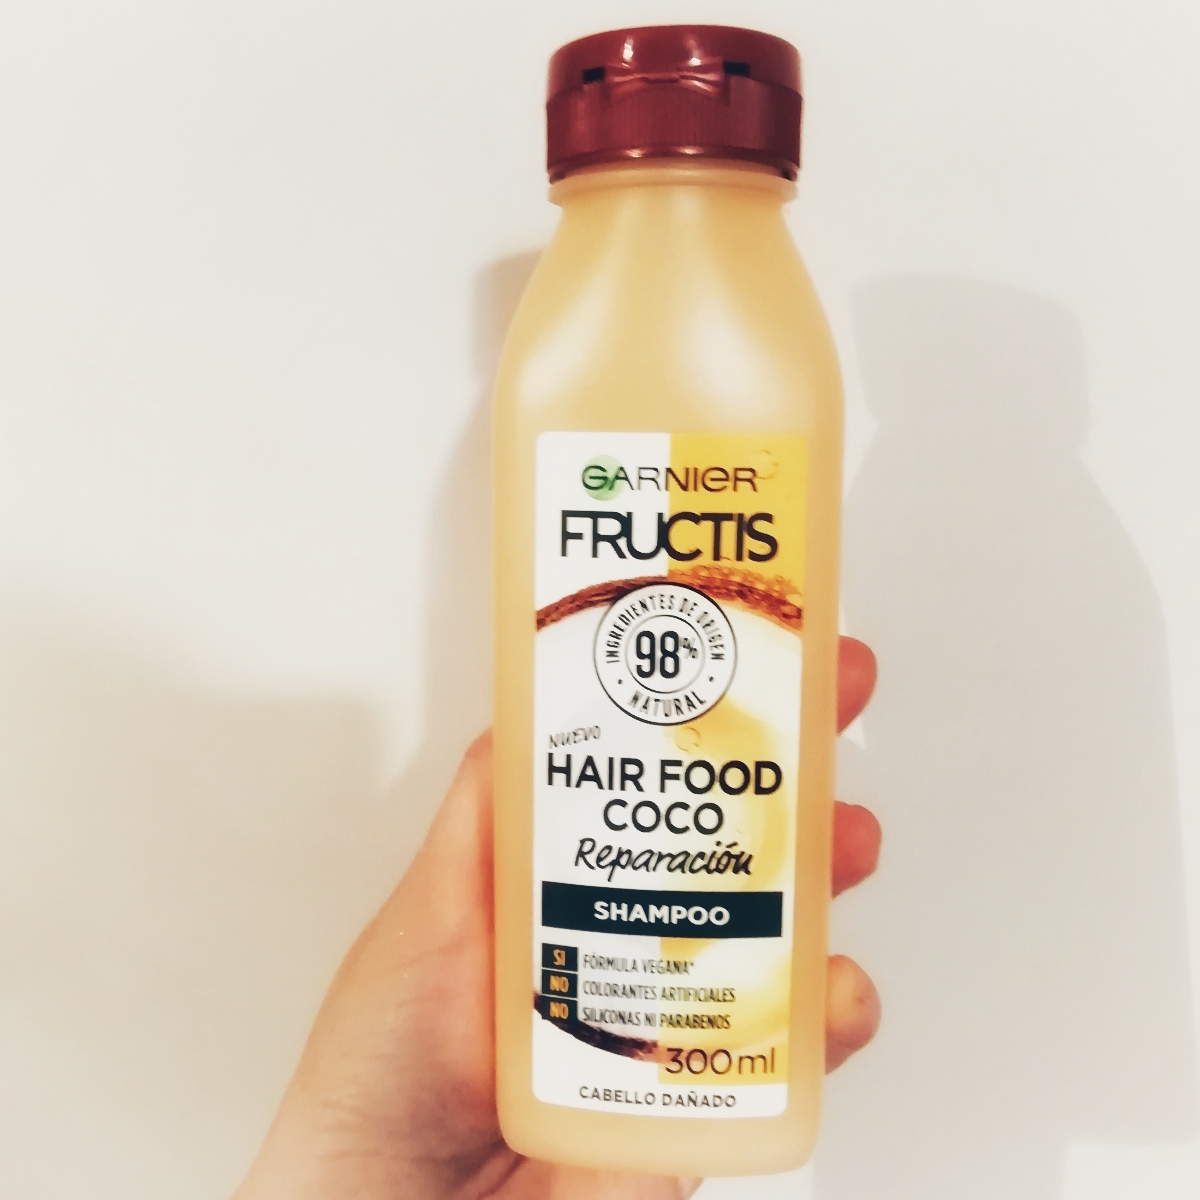 Garnier Hair Food Coco Shampoo Review | abillion